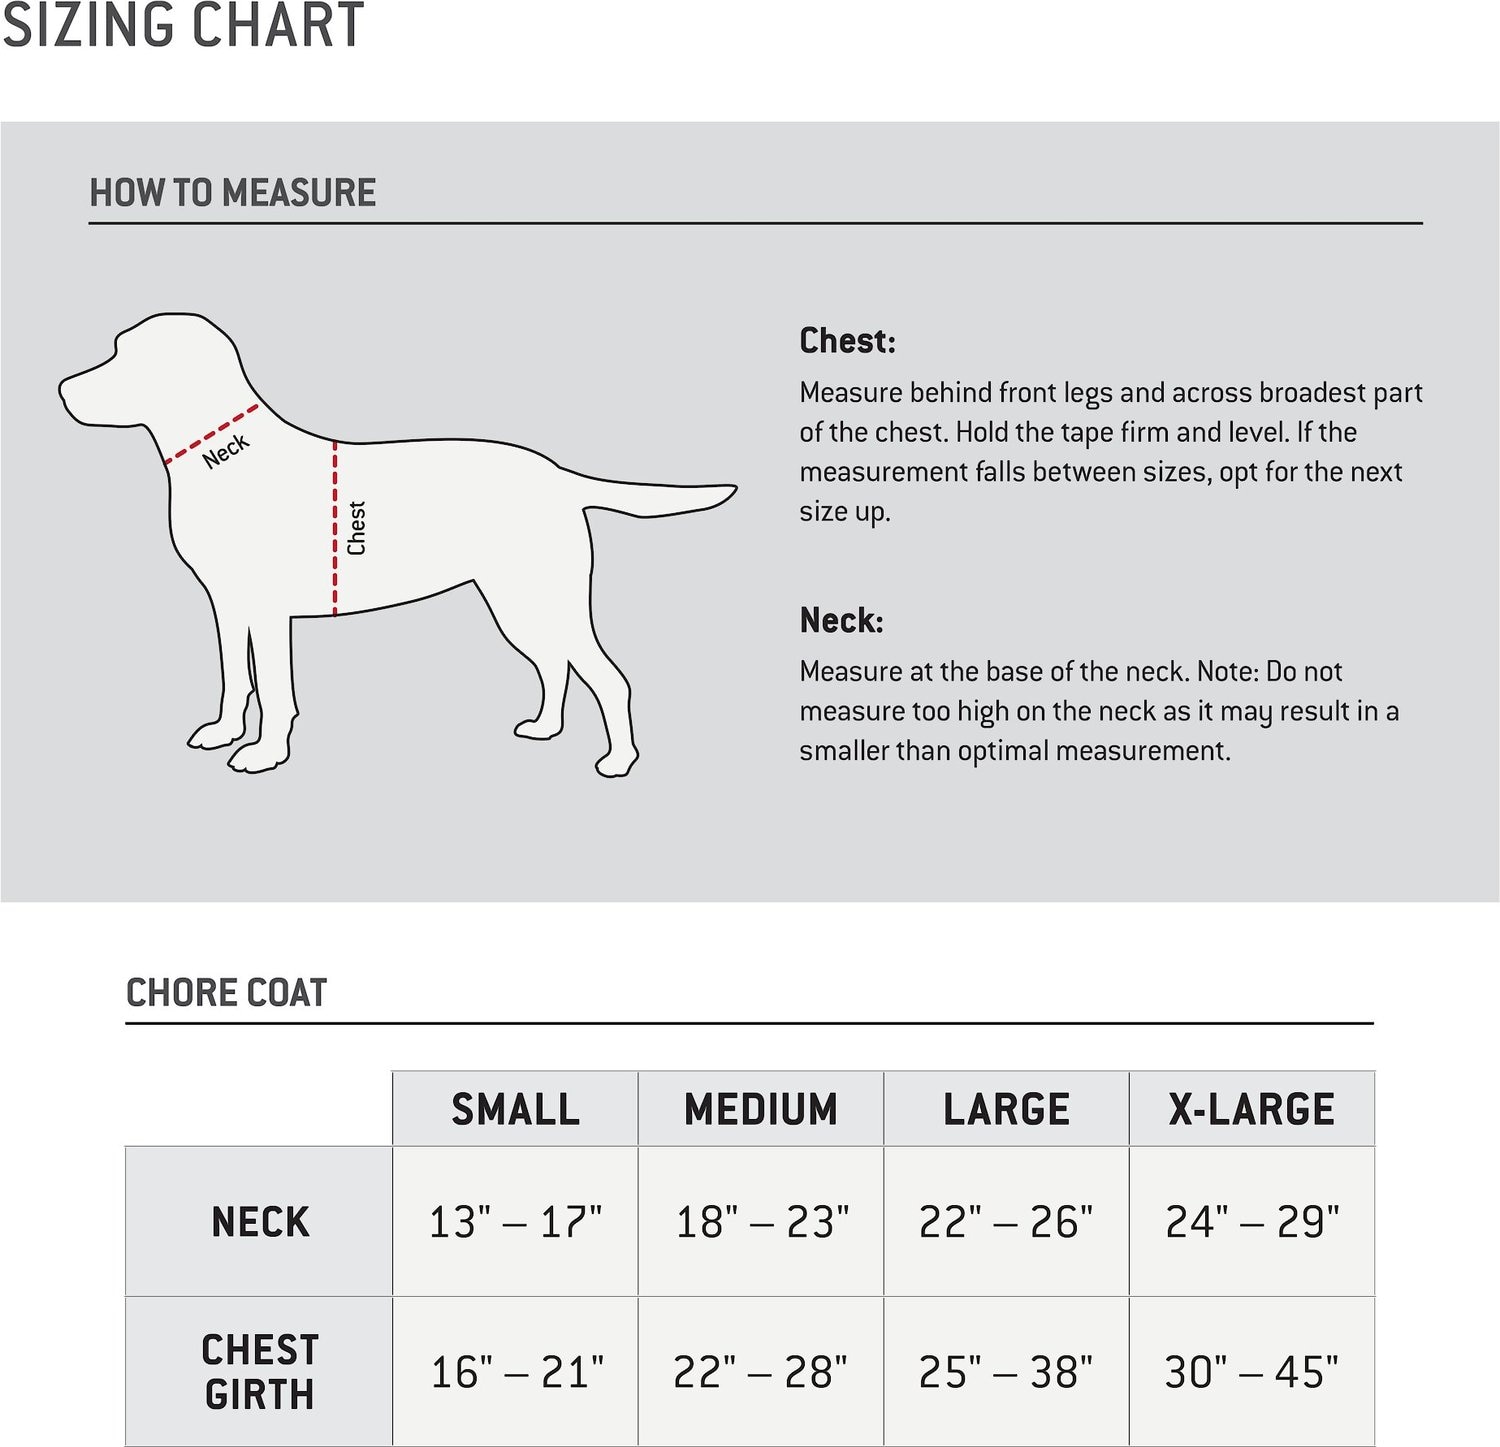 Dog Coat Measurement Chart